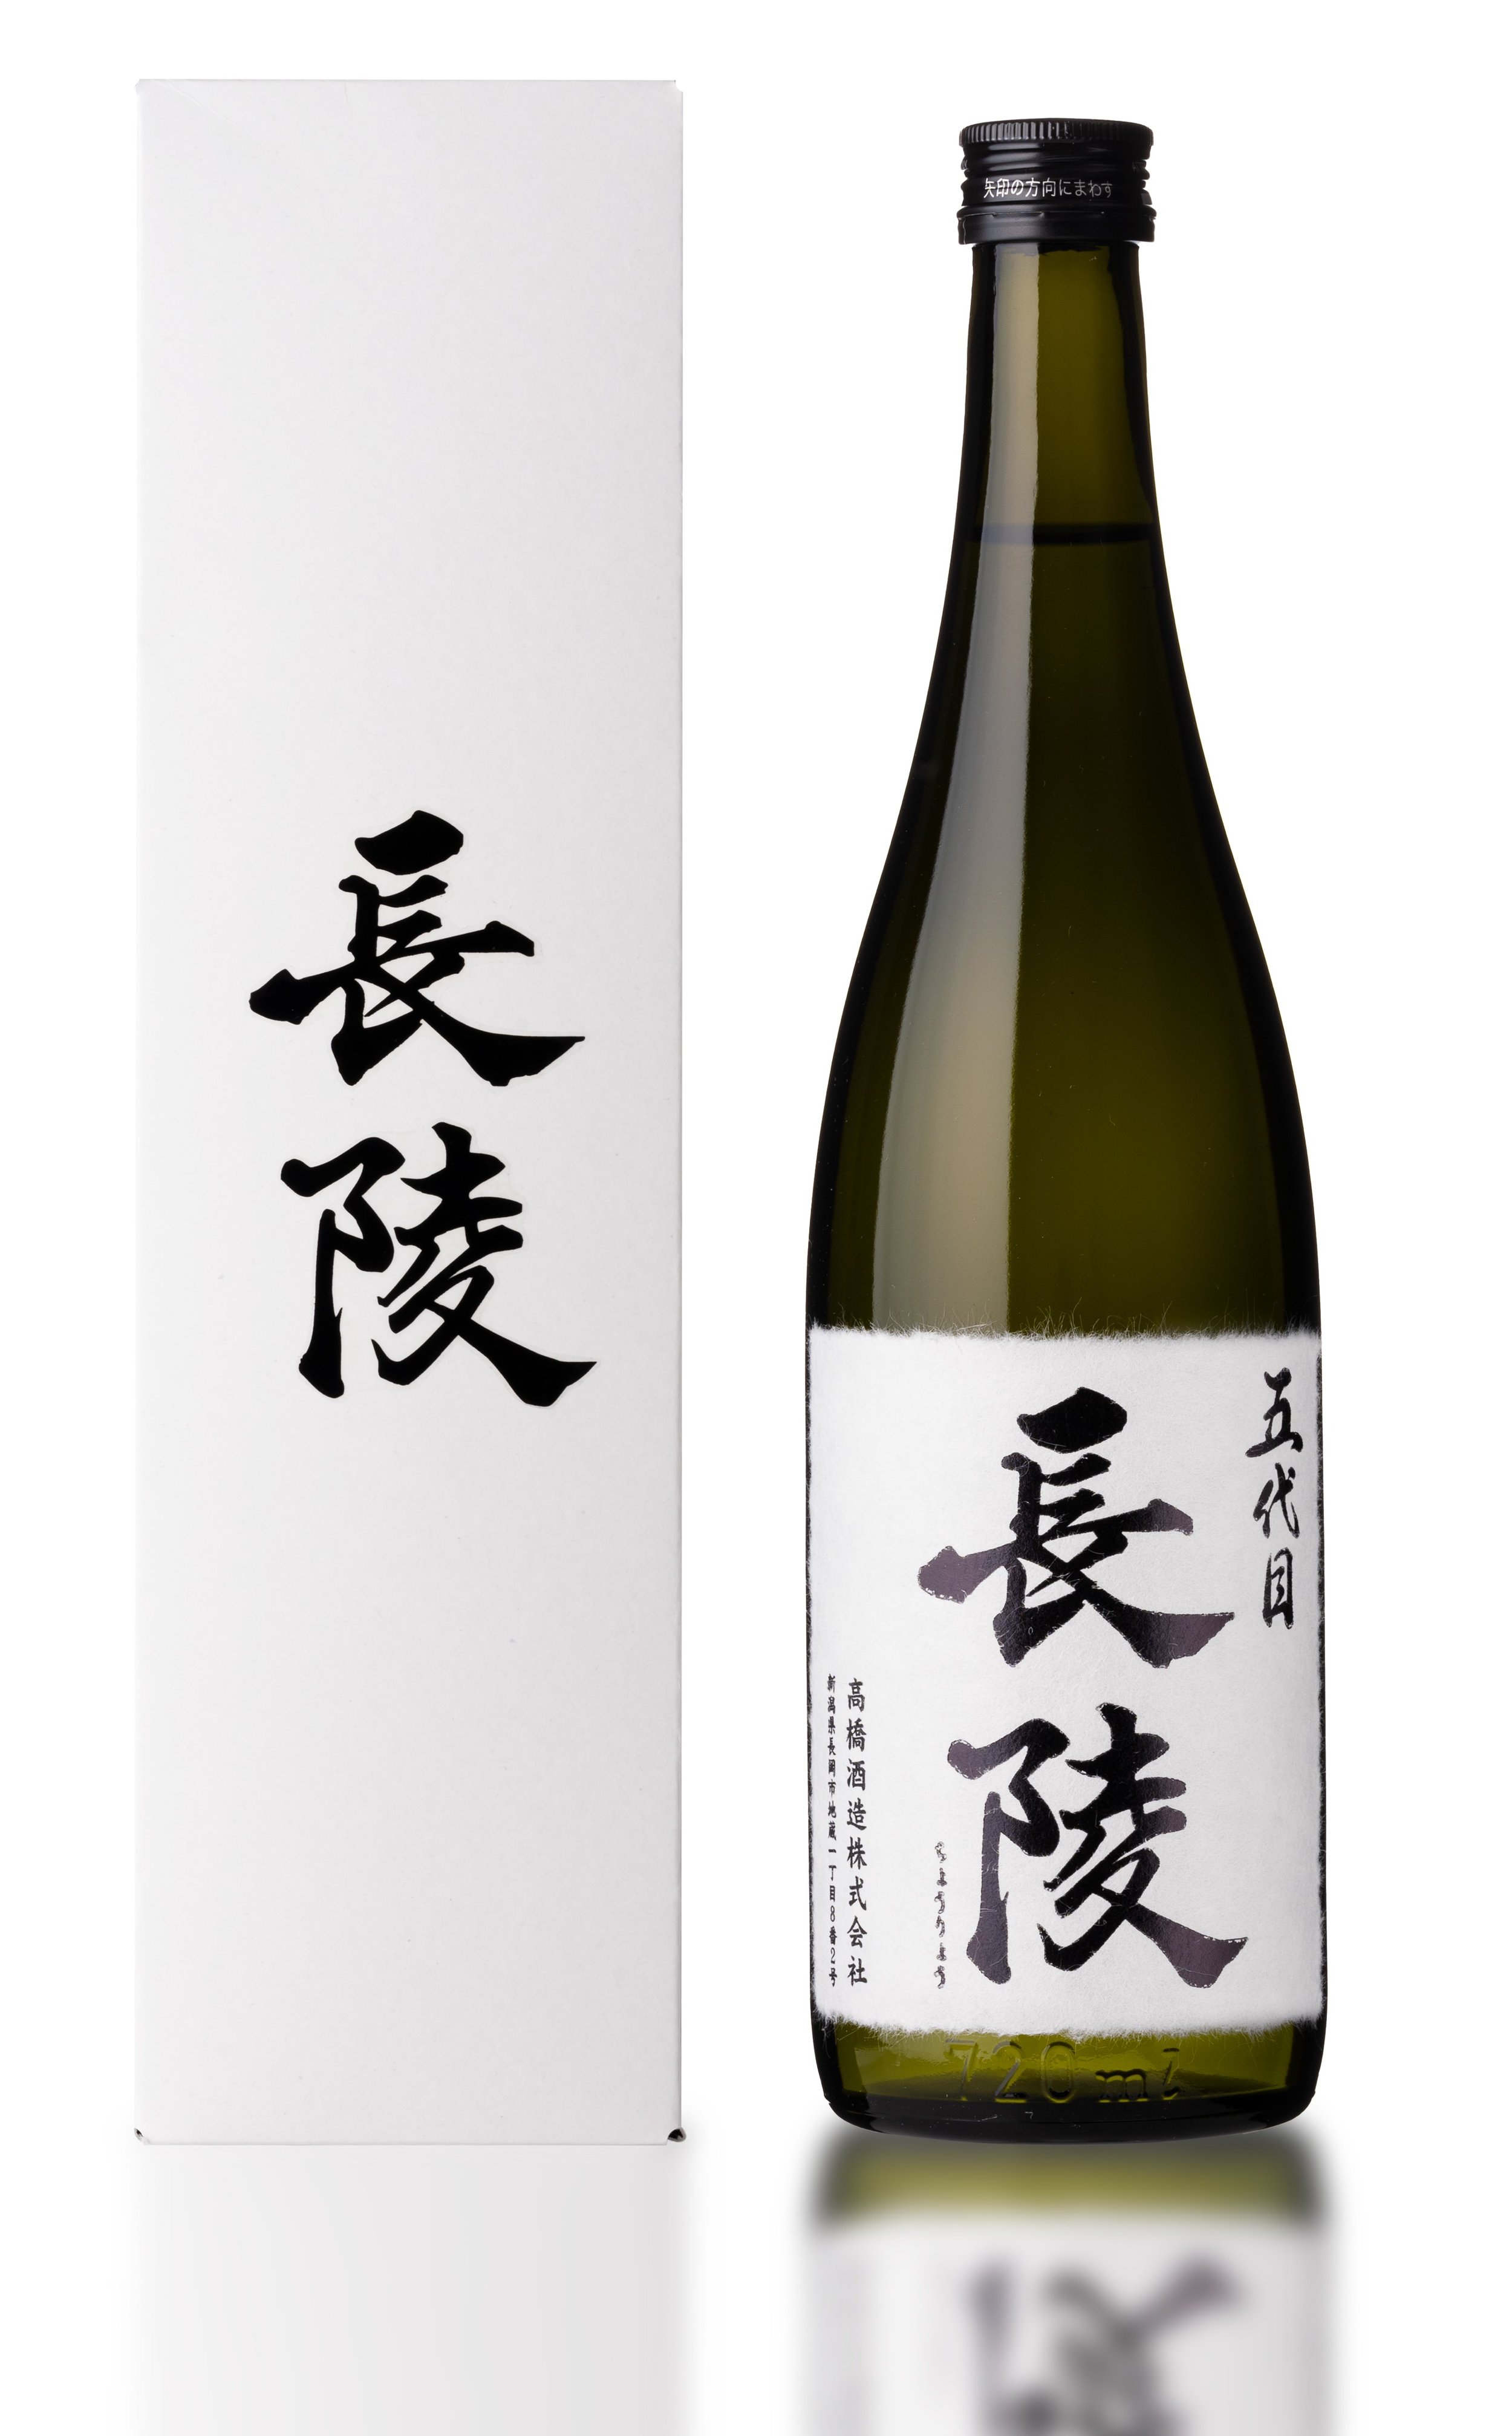 Kiritate Genzo No. 4 sake bottle